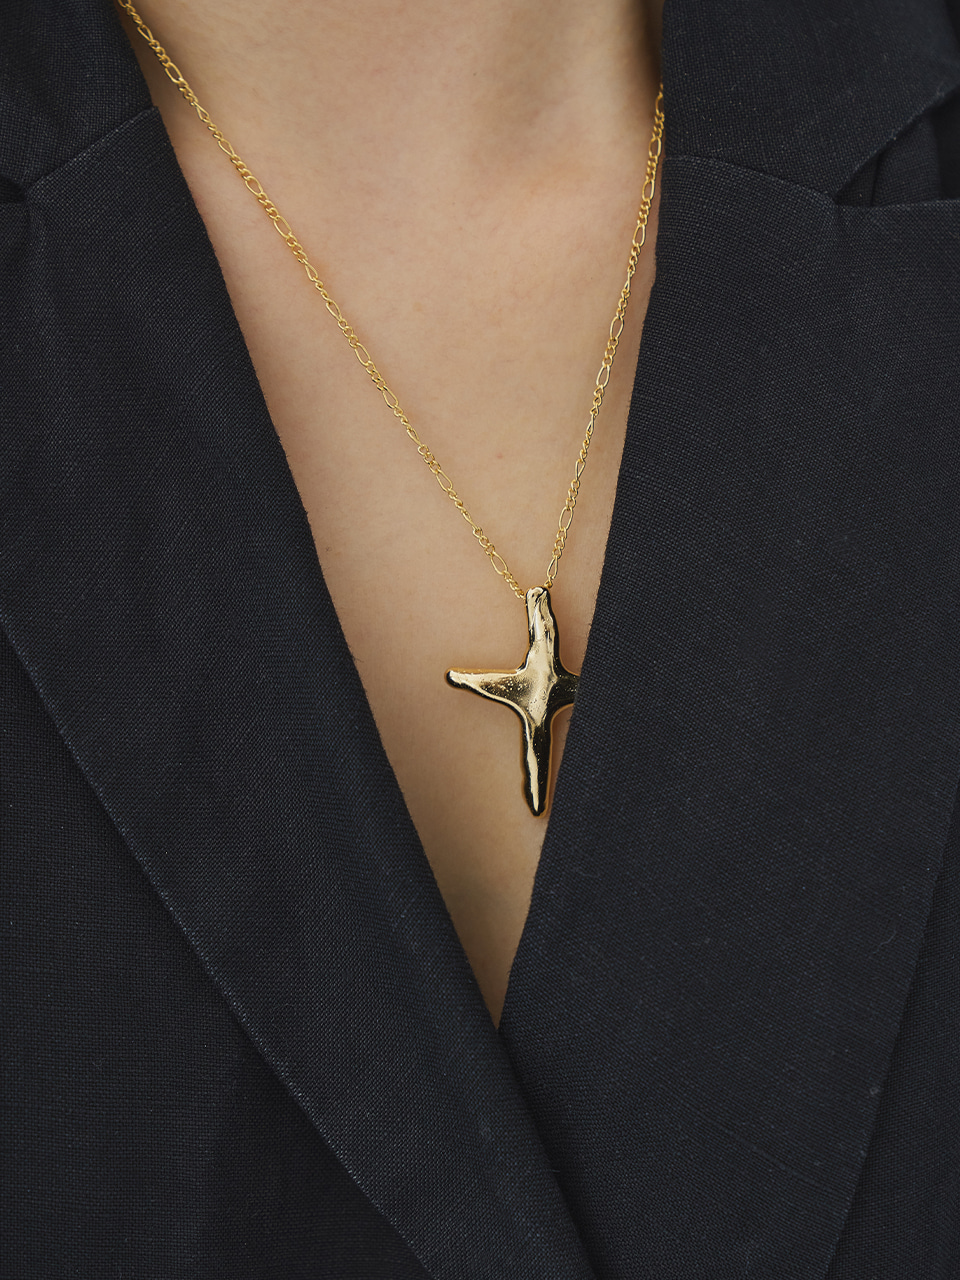 Cross Necklace (SILVER925)COTOIT